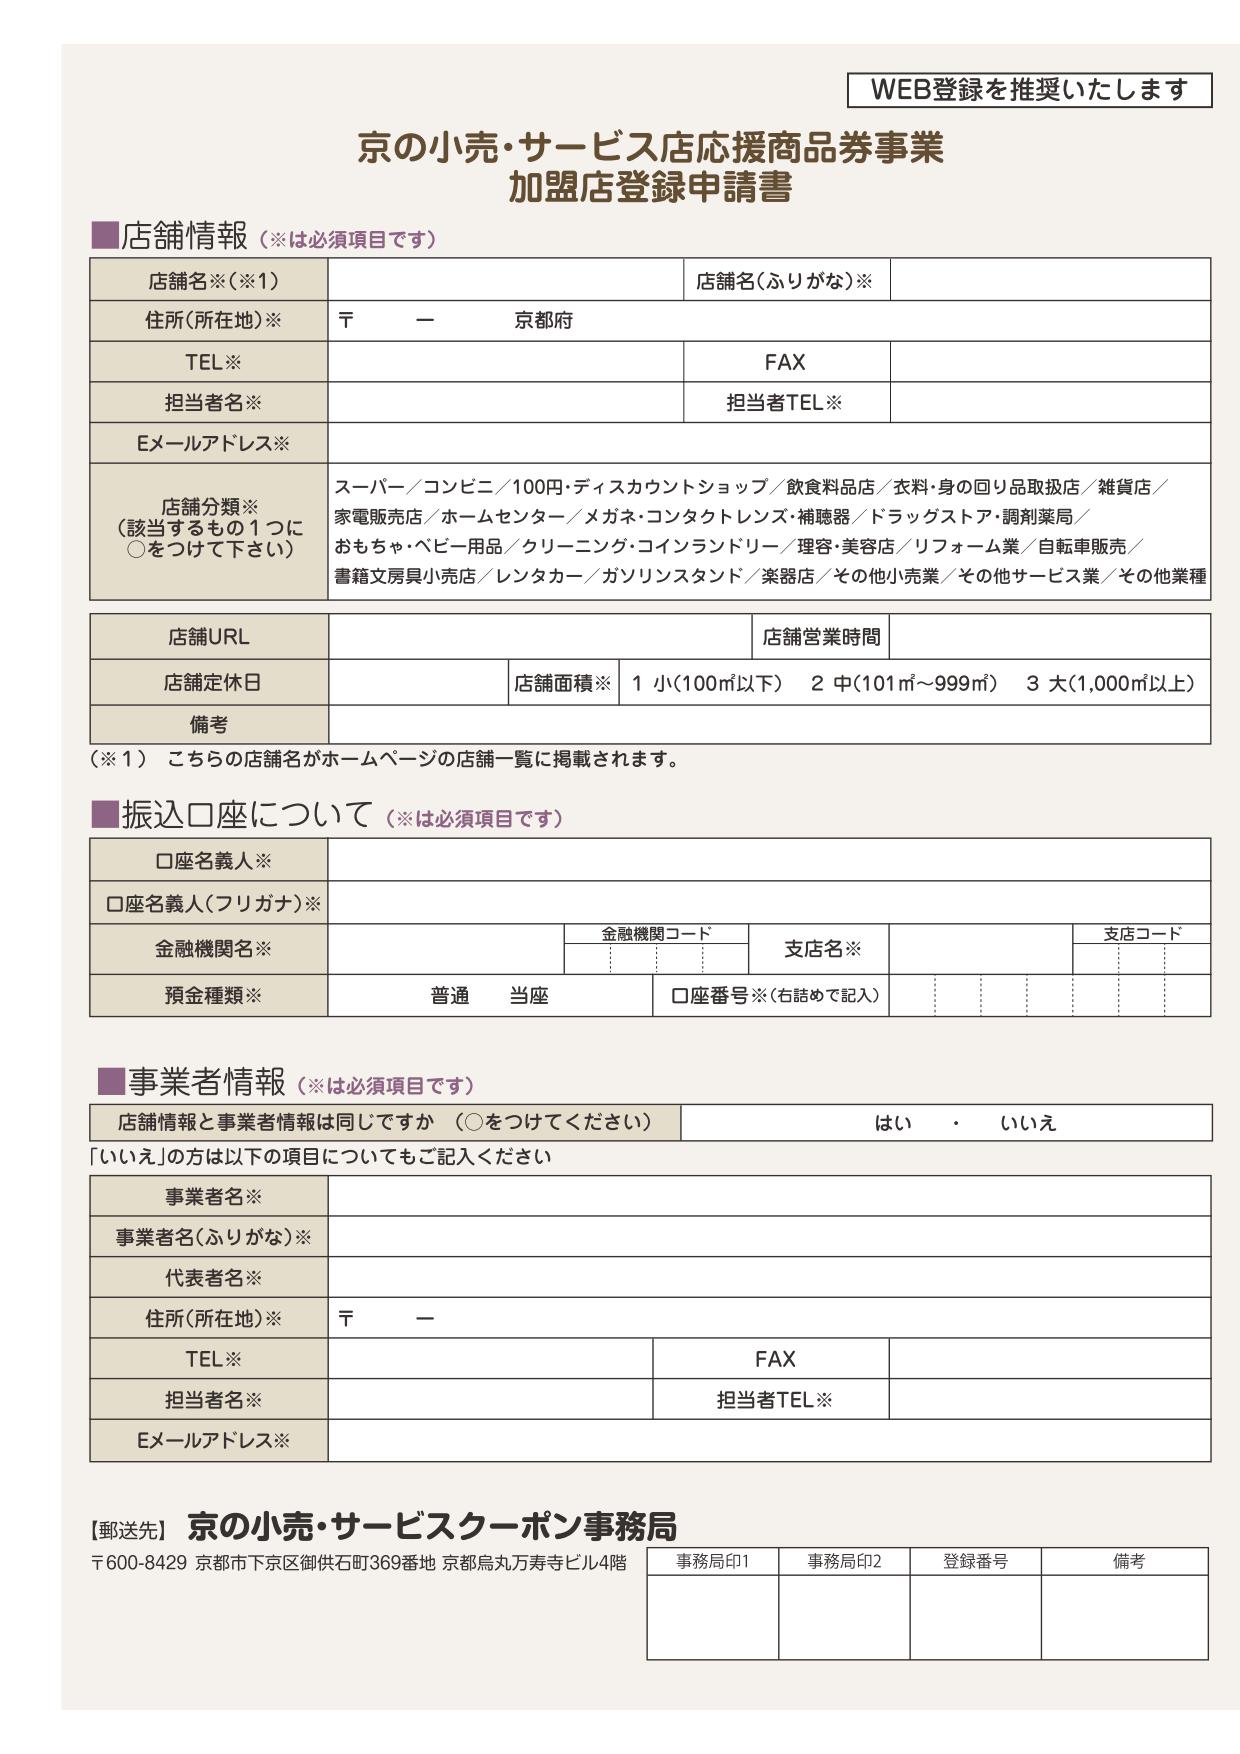 京の小売・サービスクーポン店応援商品券事業　加盟店登録申請書